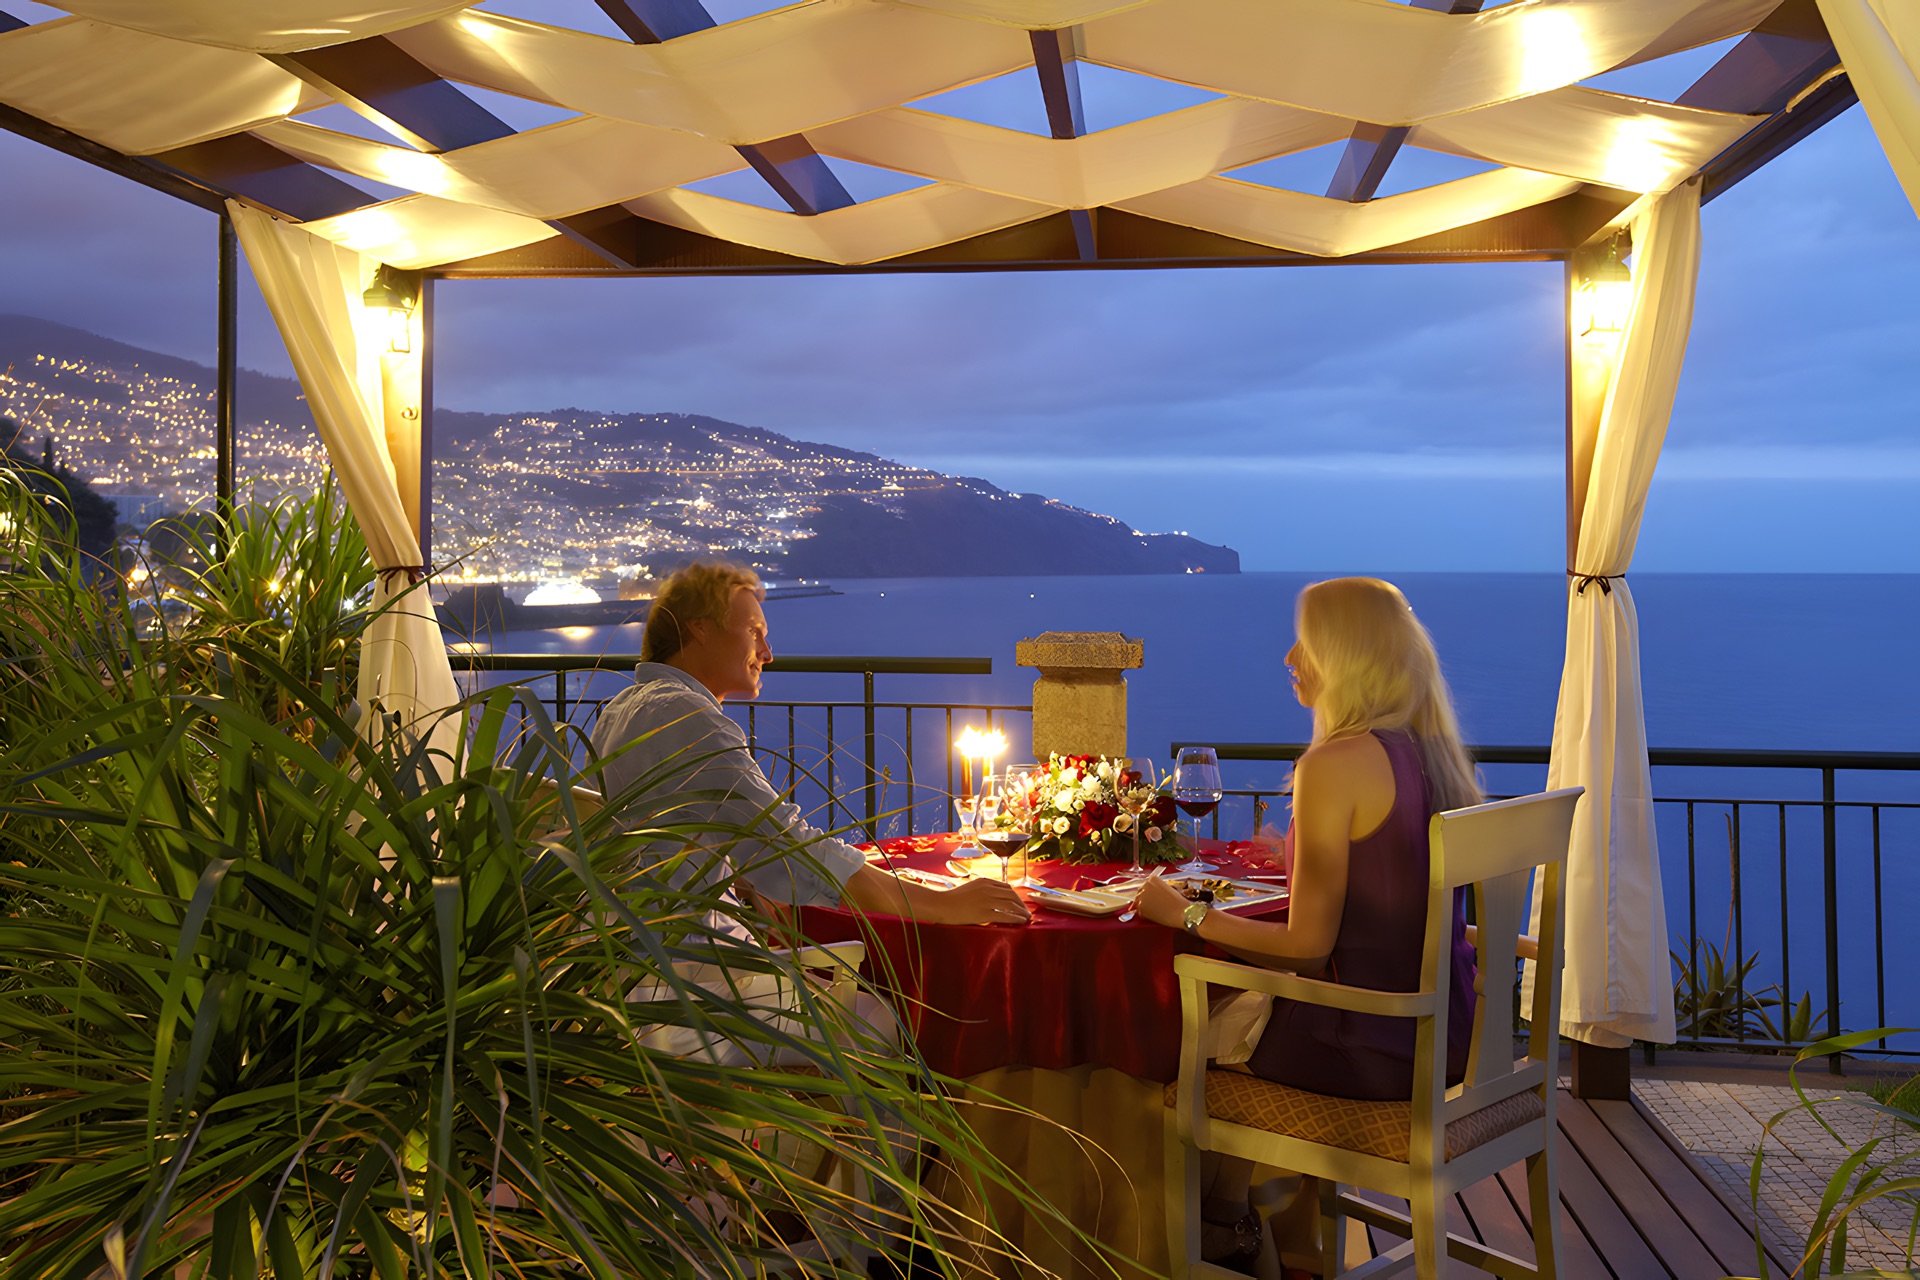 Место для ужина. Ресторан с видом на море. Романтичное место. Вечер на террасе. Ресторан на берегу моря.